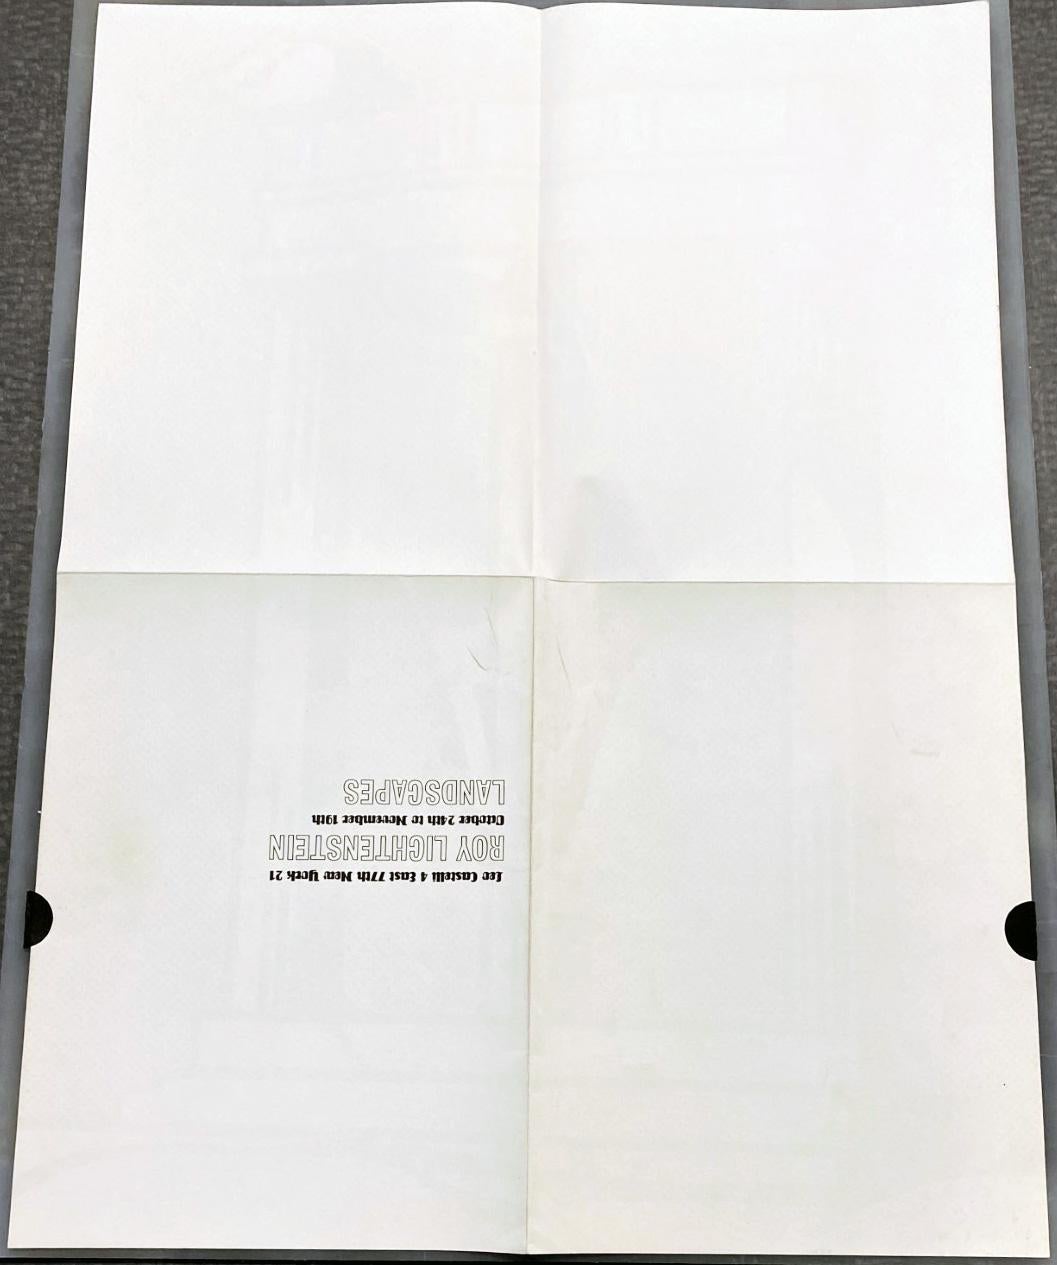 Roy Lichtenstein Temple Mailer 1964: 
Leo Castelli Gallery, New York, 1964. Original announcement mailer for Lichtenstein's 1964 exhibition 